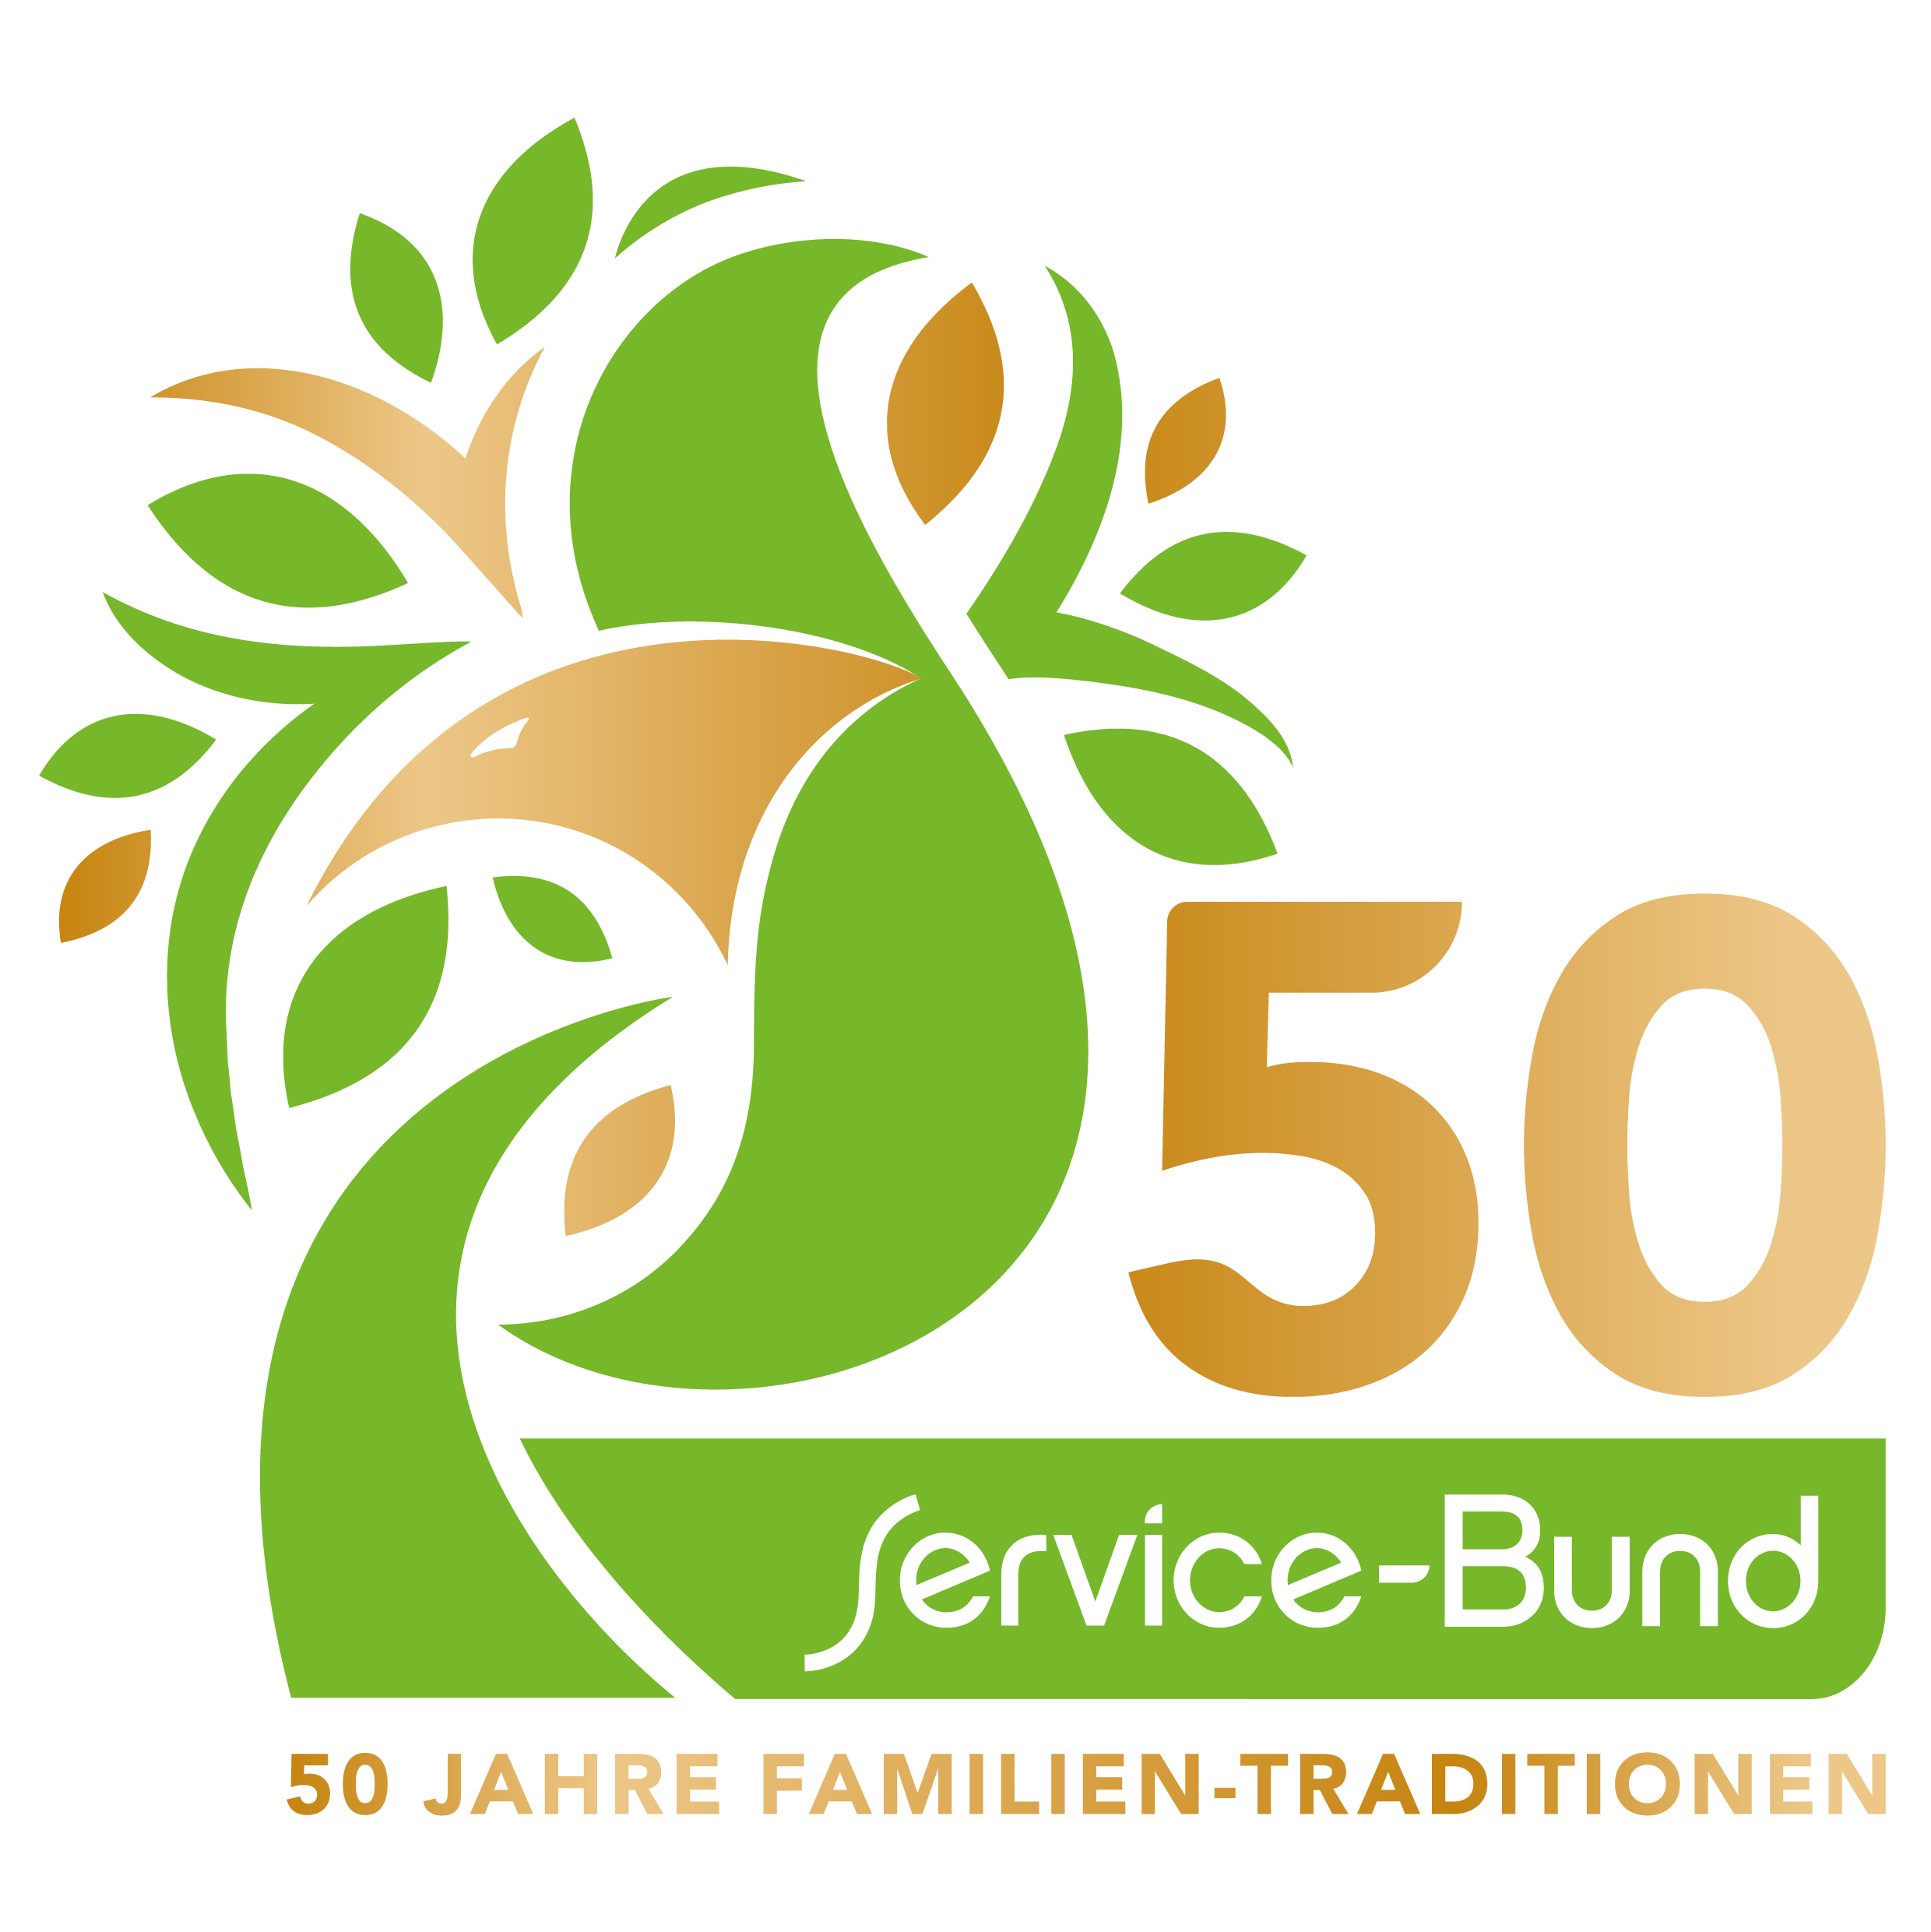 50 Jahre Service-Bund